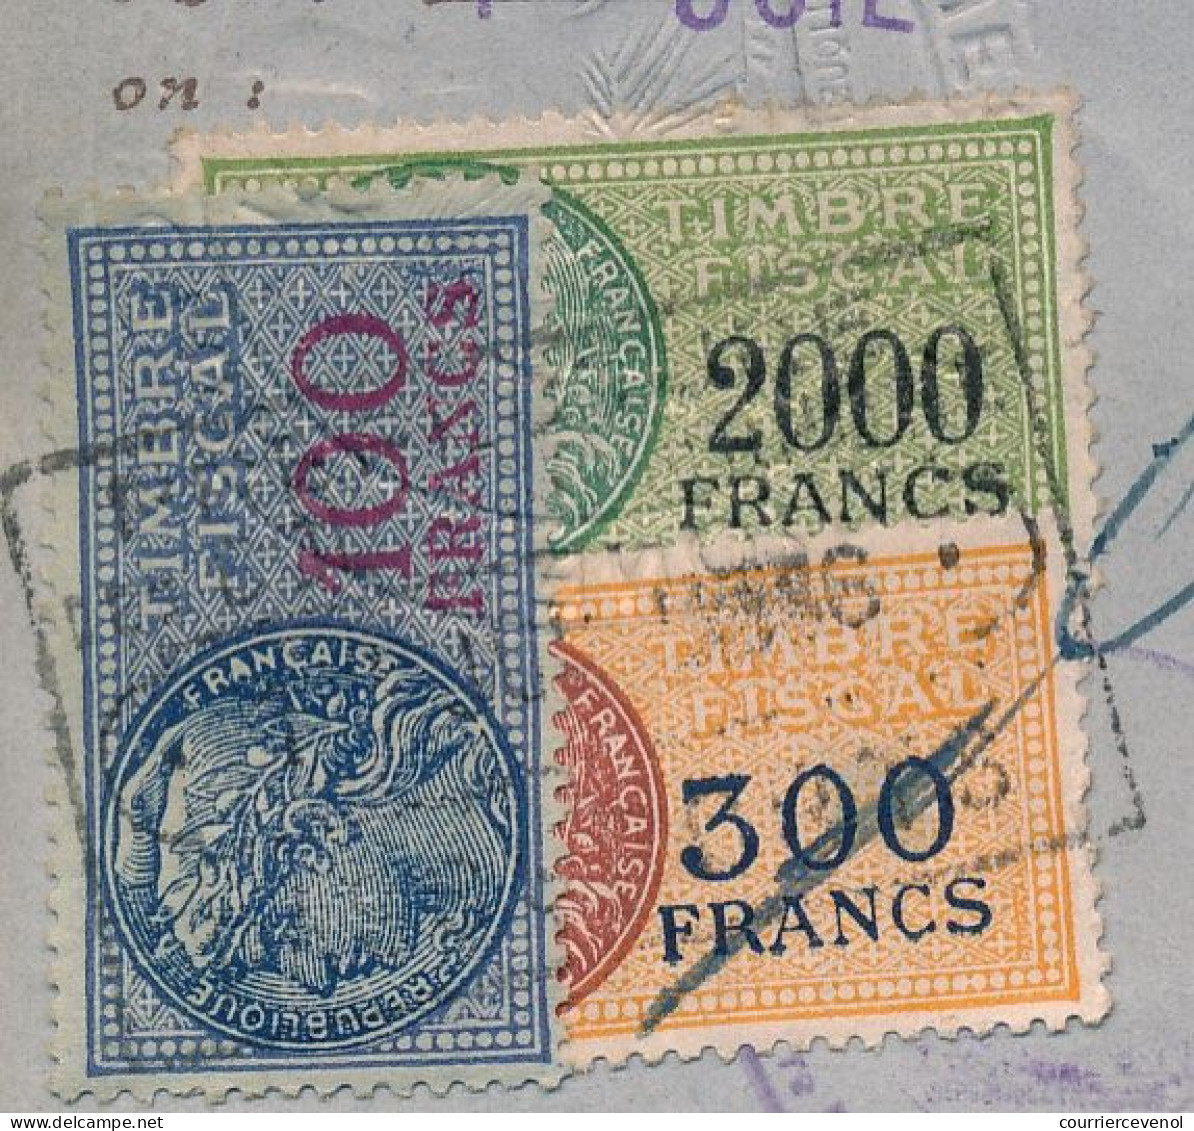 FRANCE - Passeport Délivré à Marseille (B. Du R.) - 1959/1965 - Fiscaux Type Daussy 2000F, 300F,100F + 32,00NF + Visas - Covers & Documents